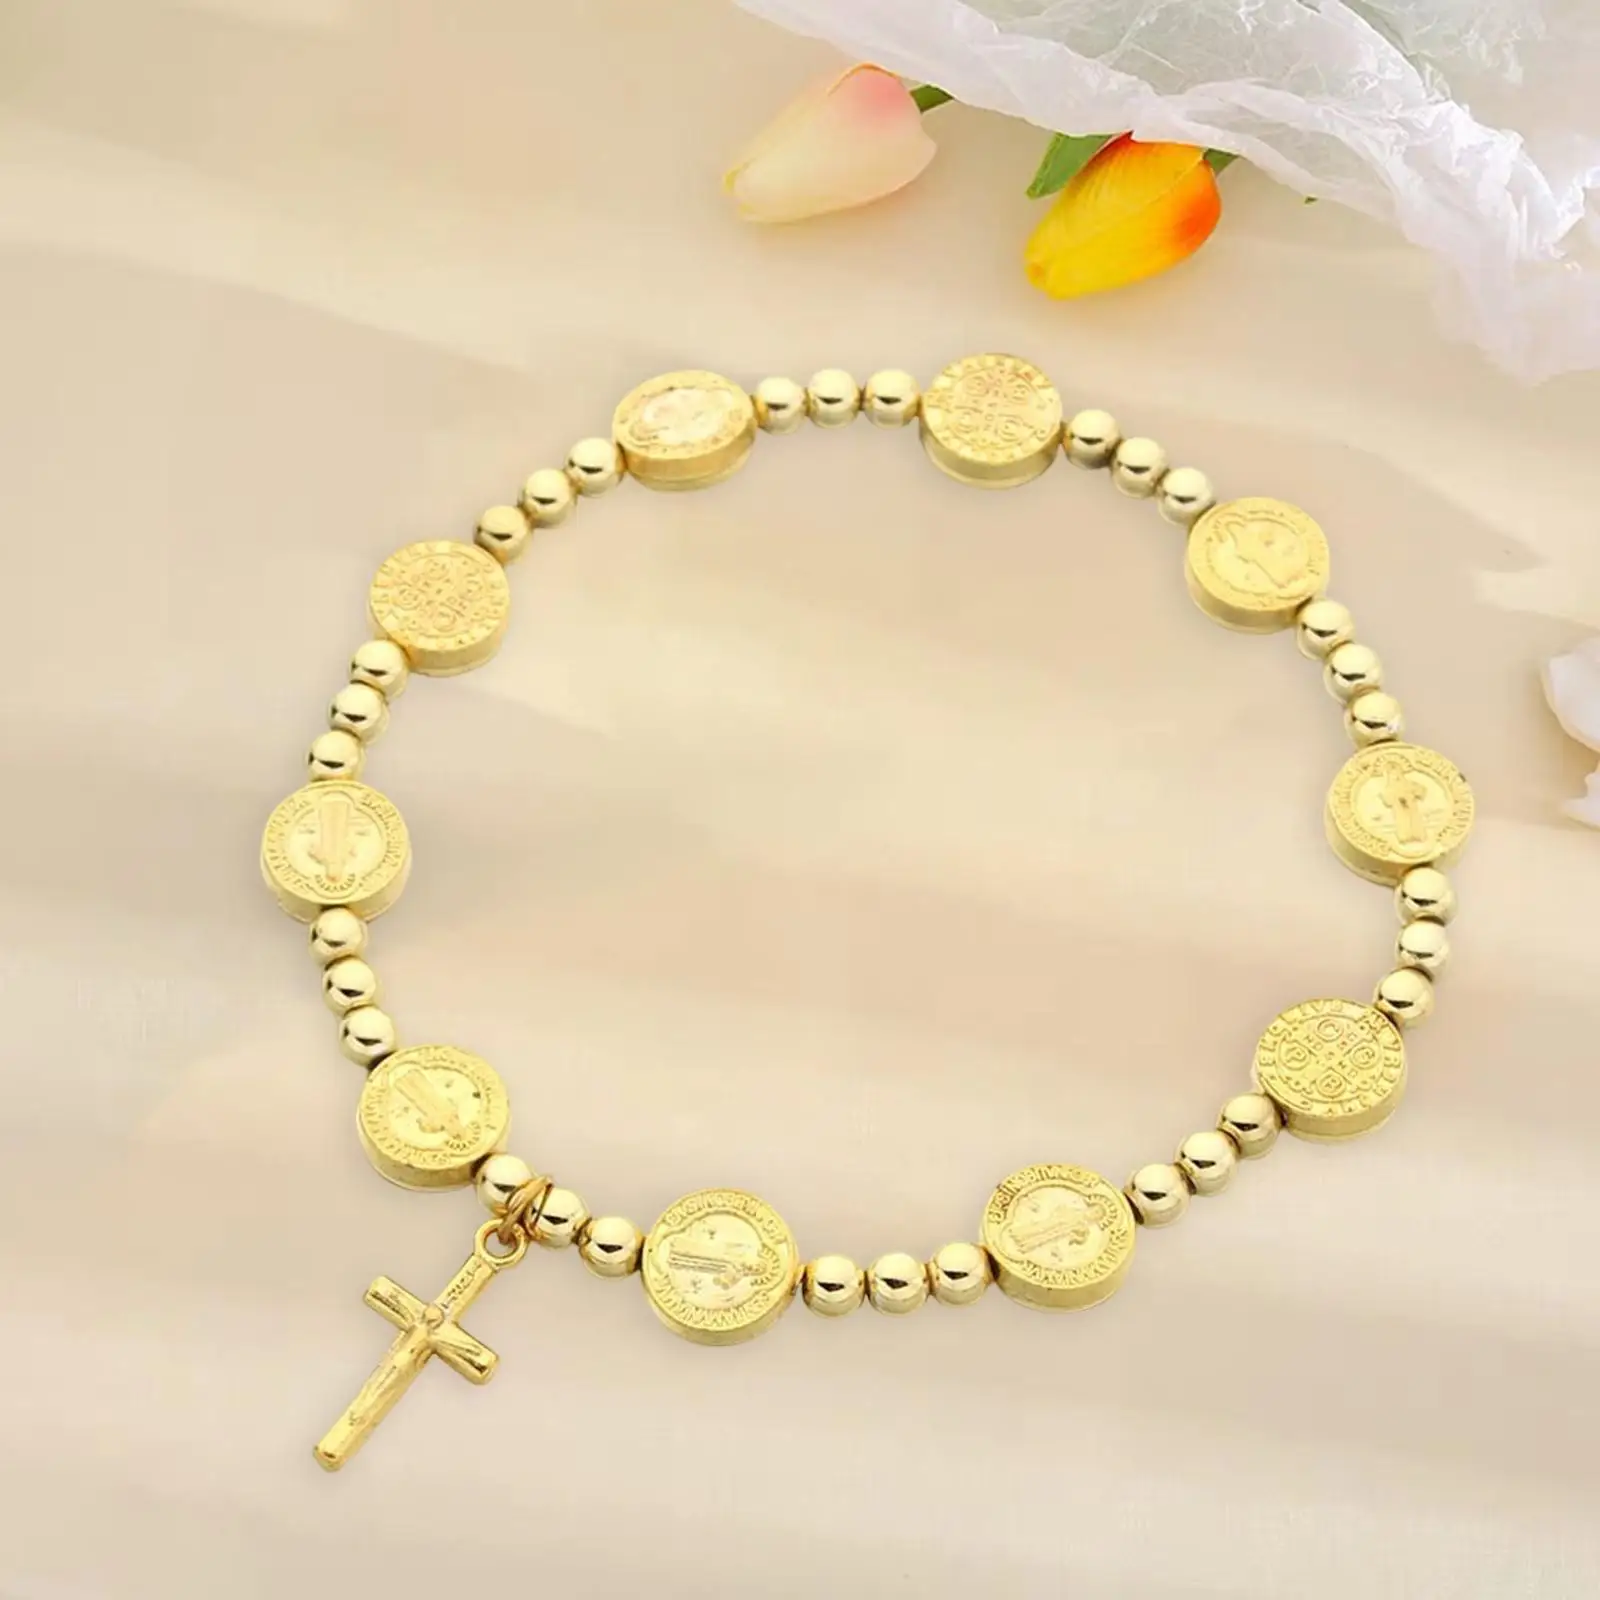 Jesus Cross Bracelet Chain Bracelet for Church Event Baptism Women Girls